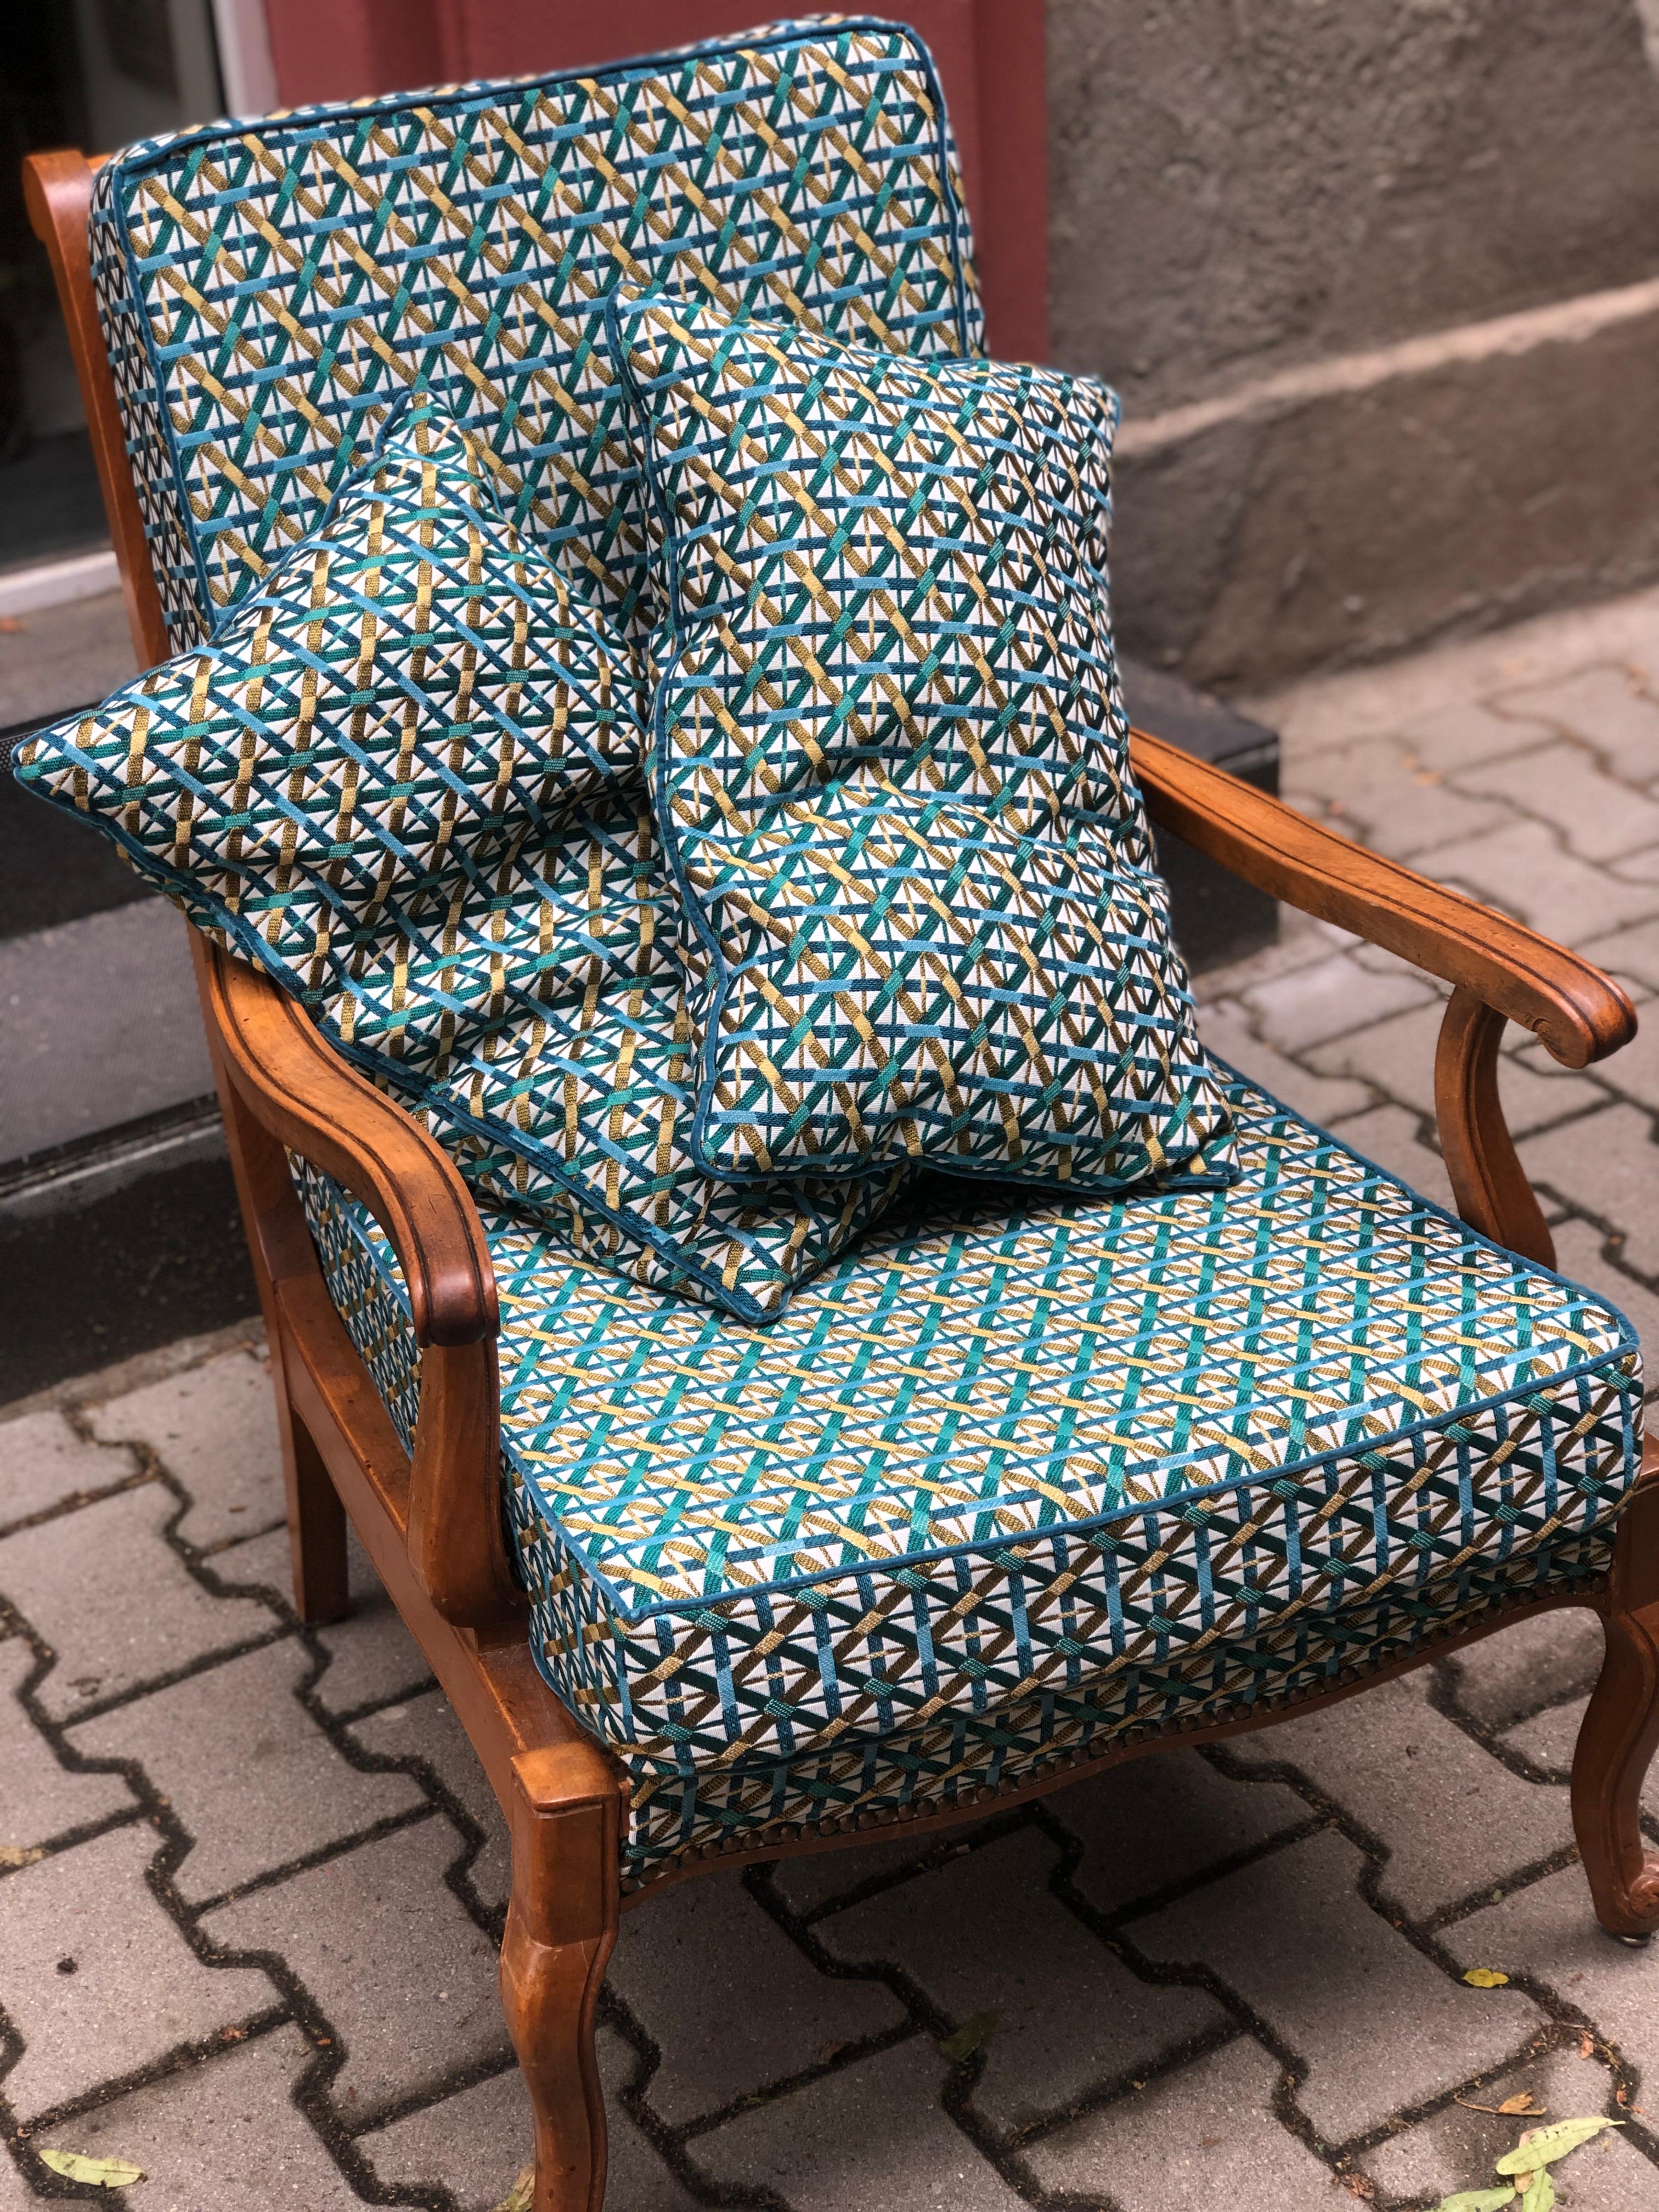 Französischer gemütlicher Sessel aus der Mitte des 20. Jahrhunderts in sehr gutem Zustand ohne Restaurierungen am Gestell. Der Boden und die Rückenlehne sind mit Metallfedern ausgestattet, was ihn sehr bequem macht. Brandneue Polsterung in